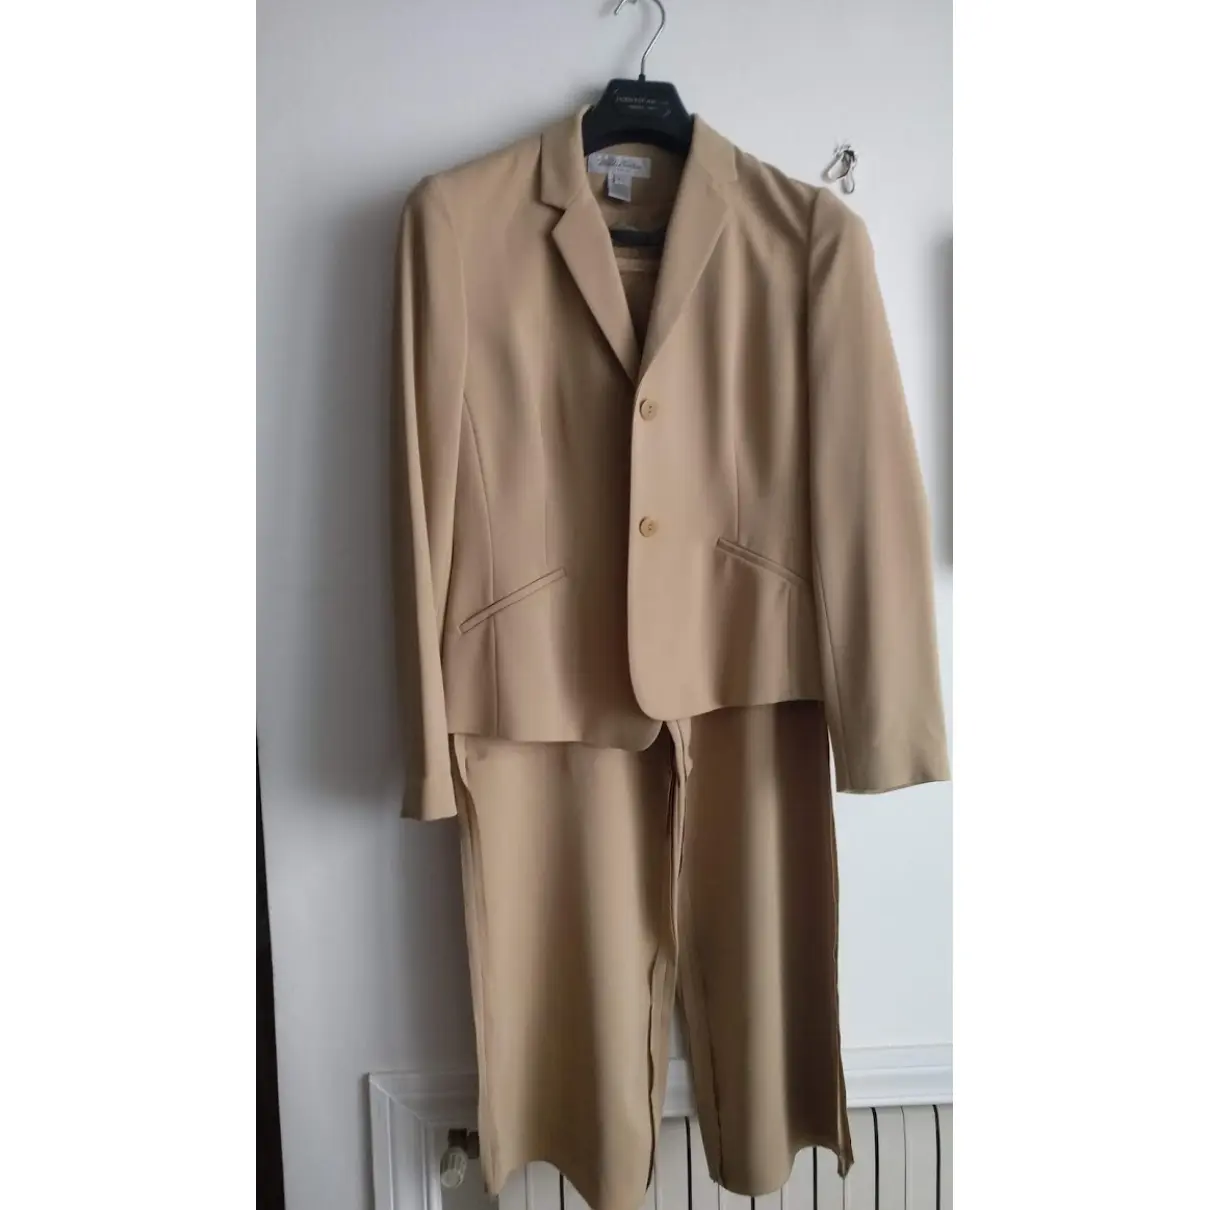 Silk suit jacket Brooks Brothers - Vintage